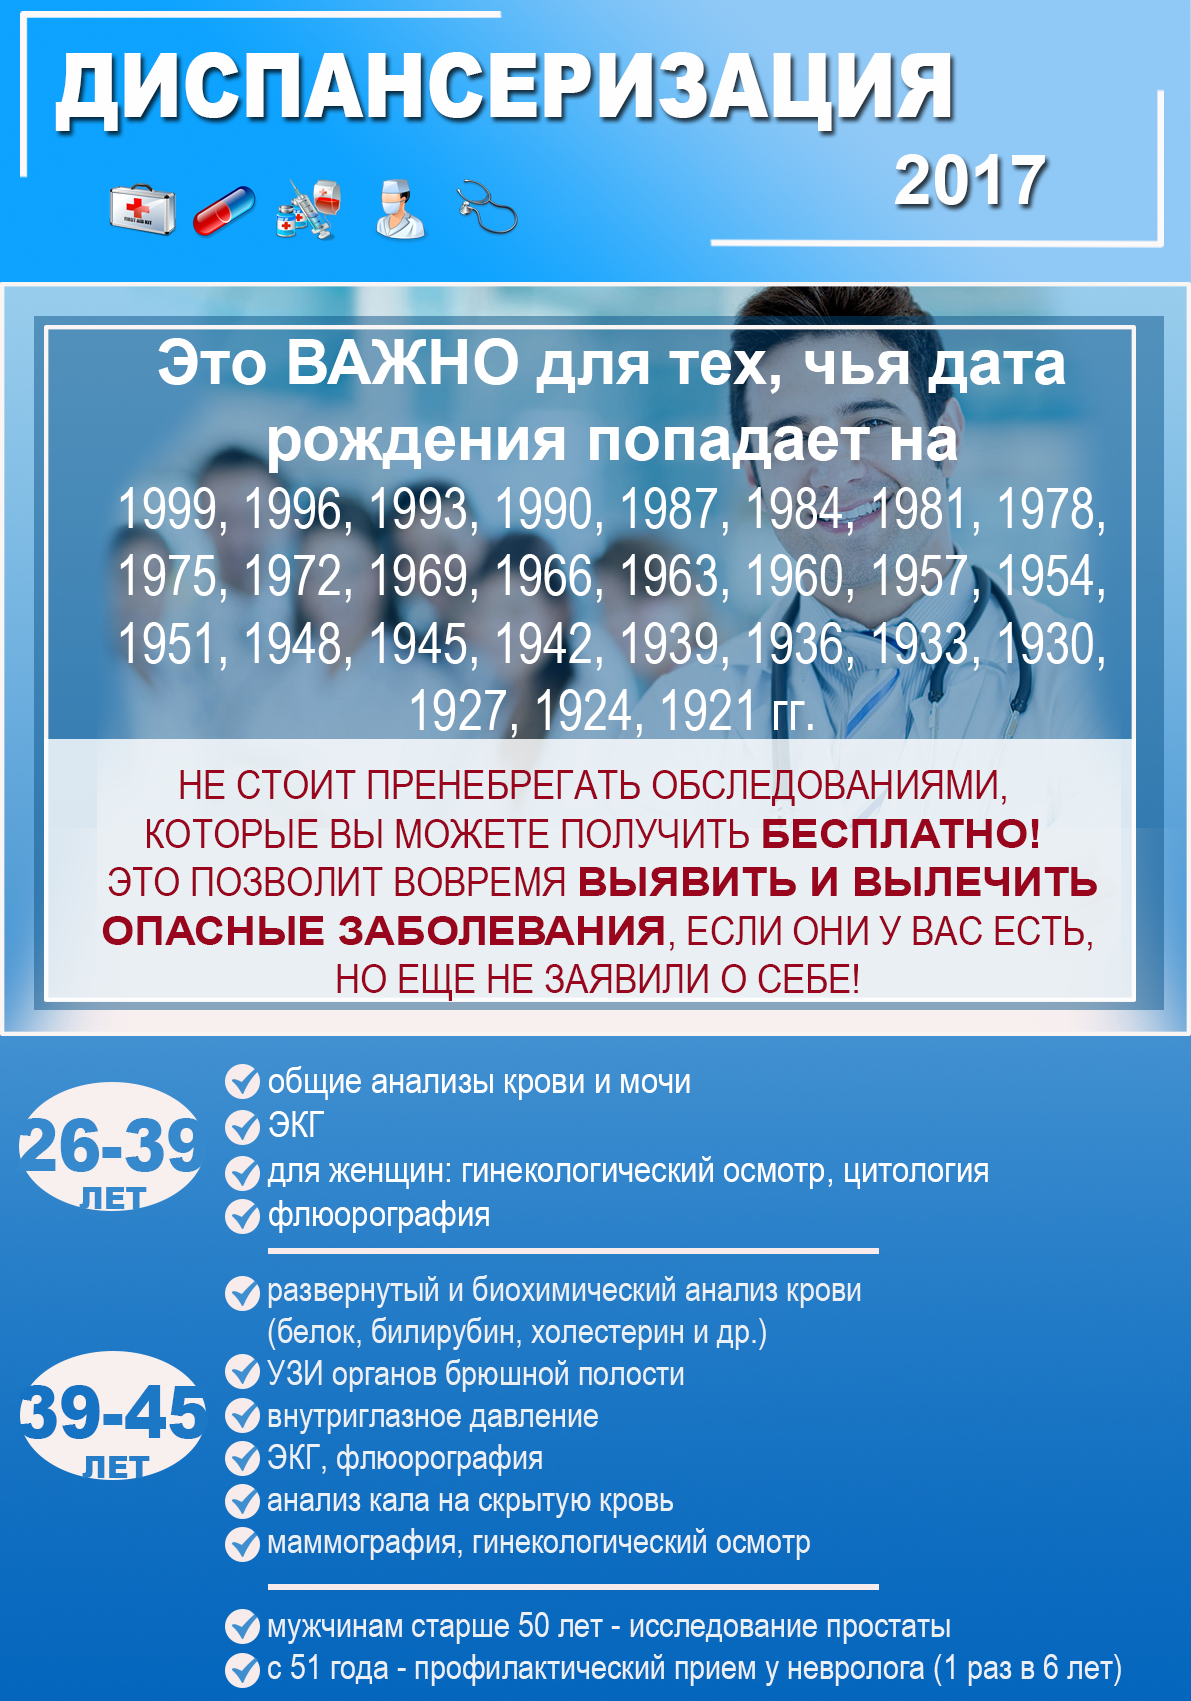 dispanserizatsiyu-v-kbr-proshli-bolshe-145-tysyach-chelovek.png